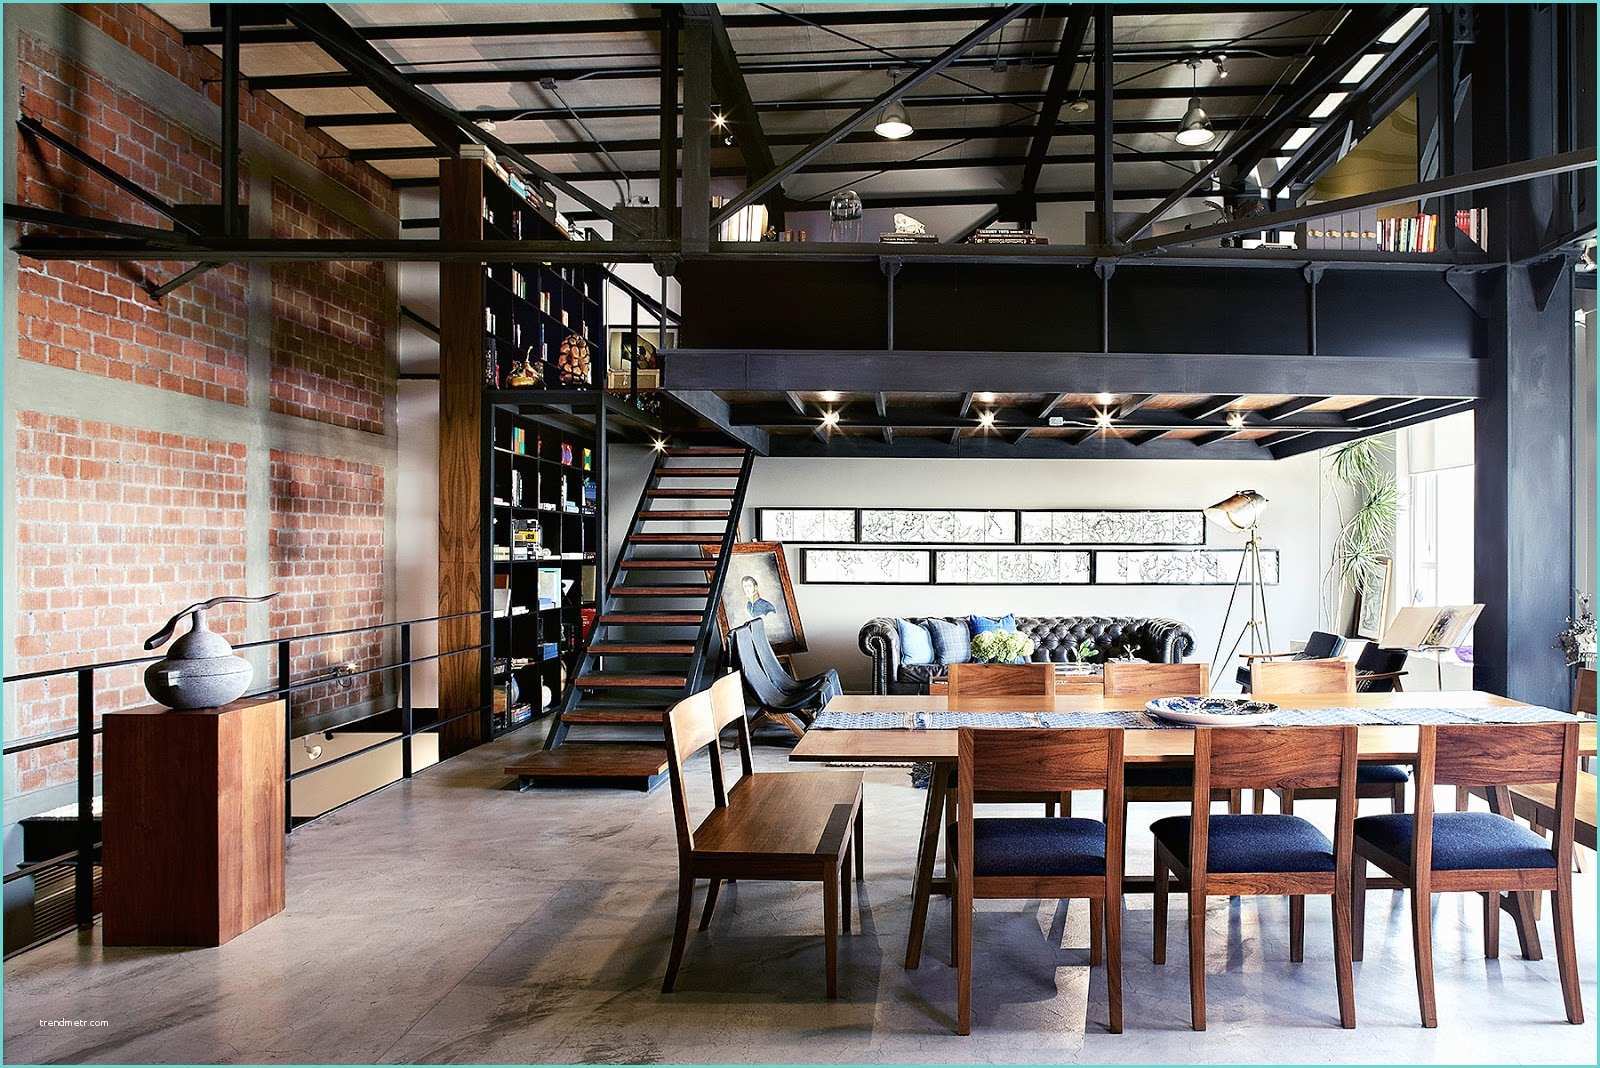 Studio Di Interior Design Un Loft In Stile Industriale In Messico Coffee Break